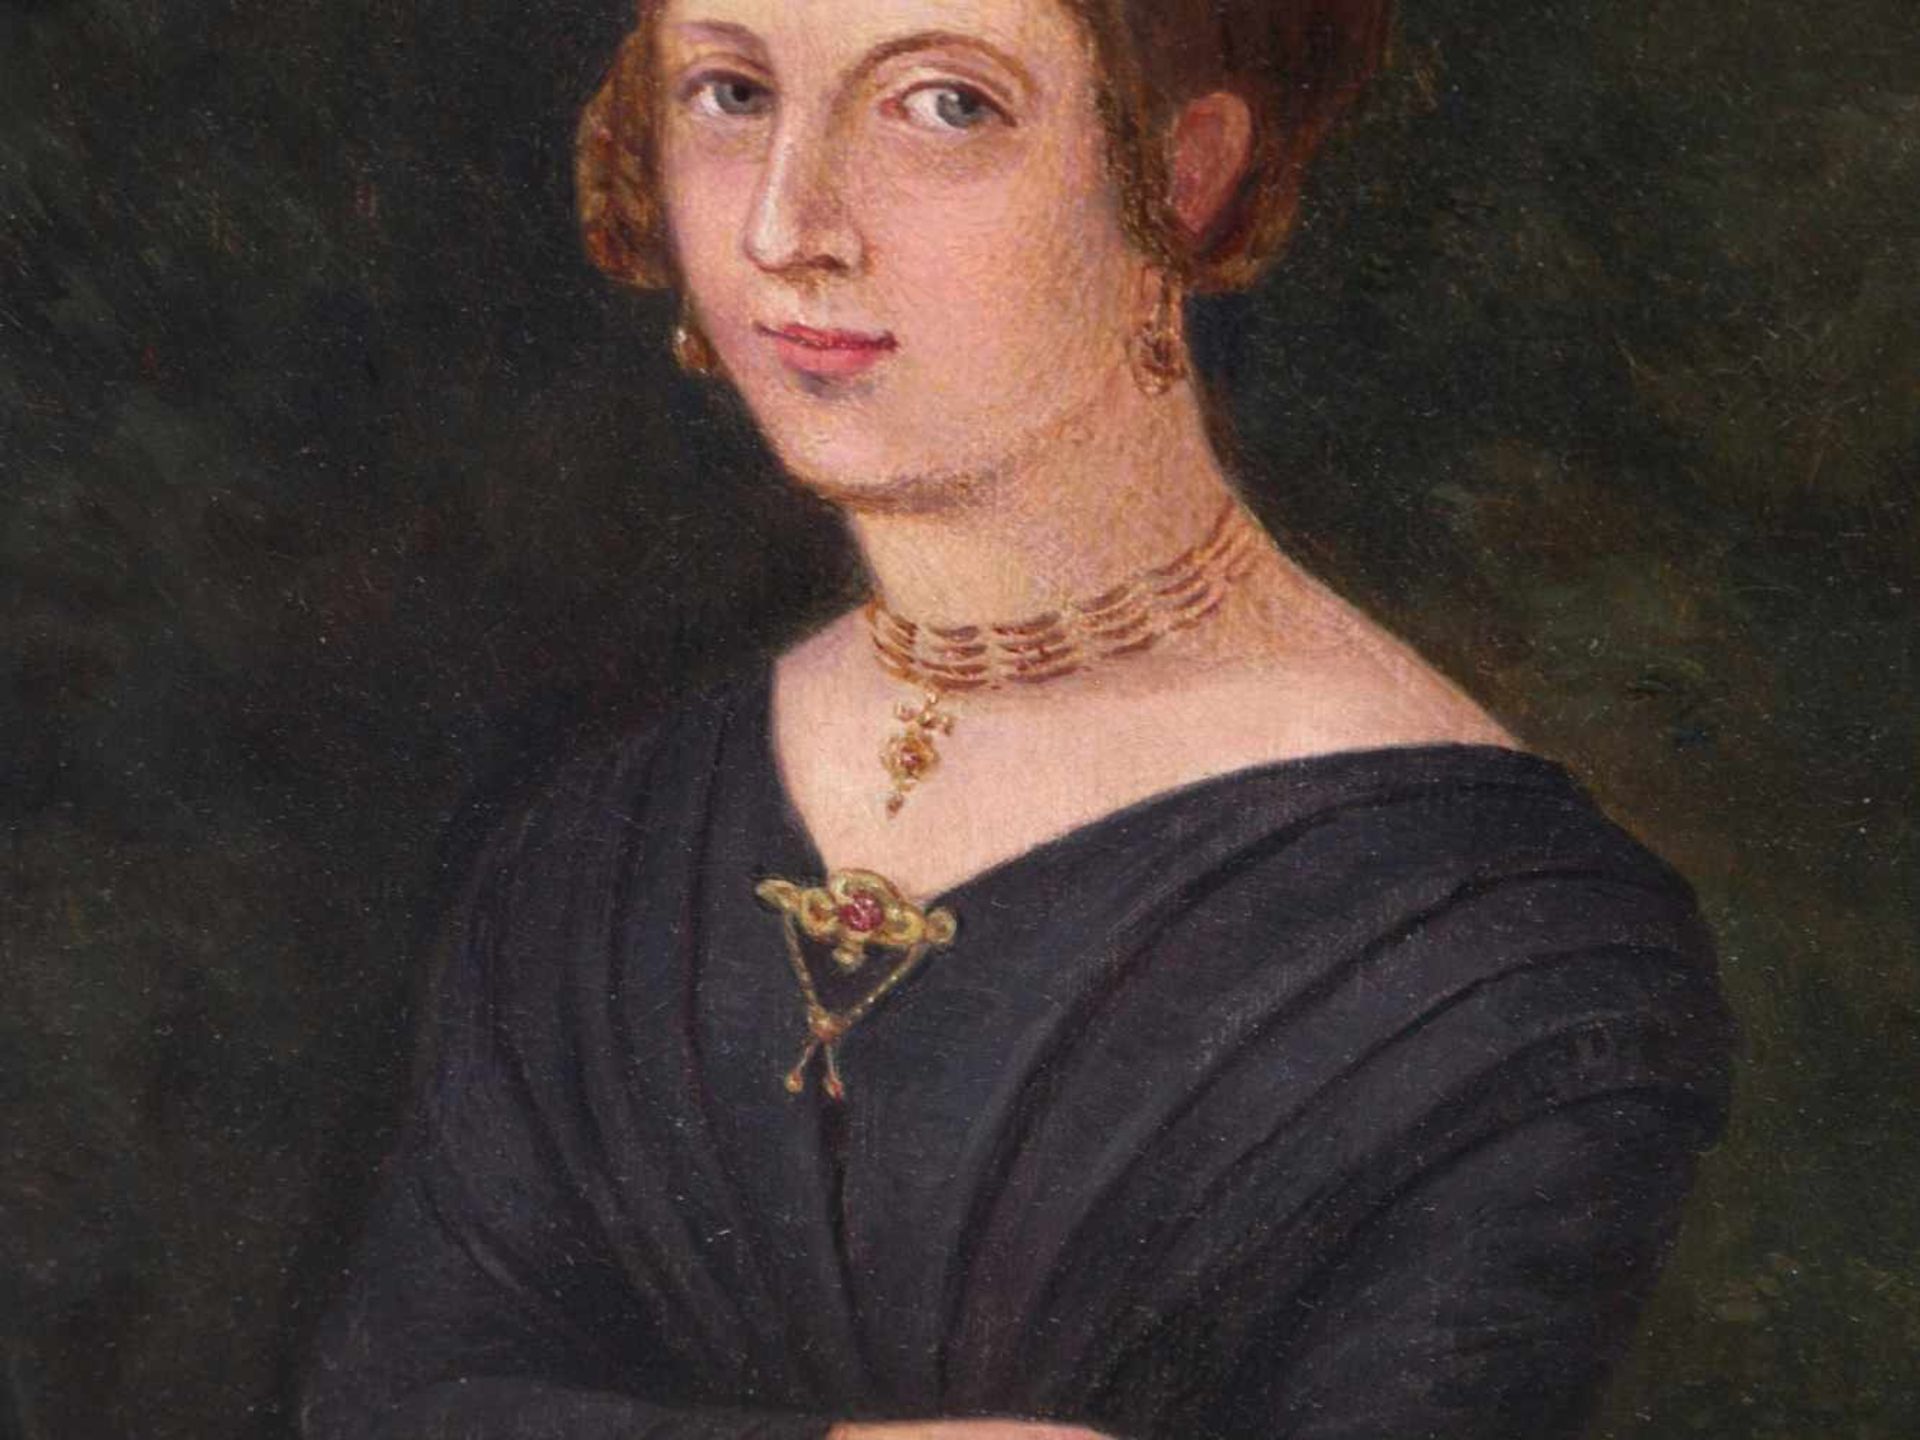 Unbekannt - Biedermeier-Portrait einer jungen Dame um 1850 - Image 8 of 10